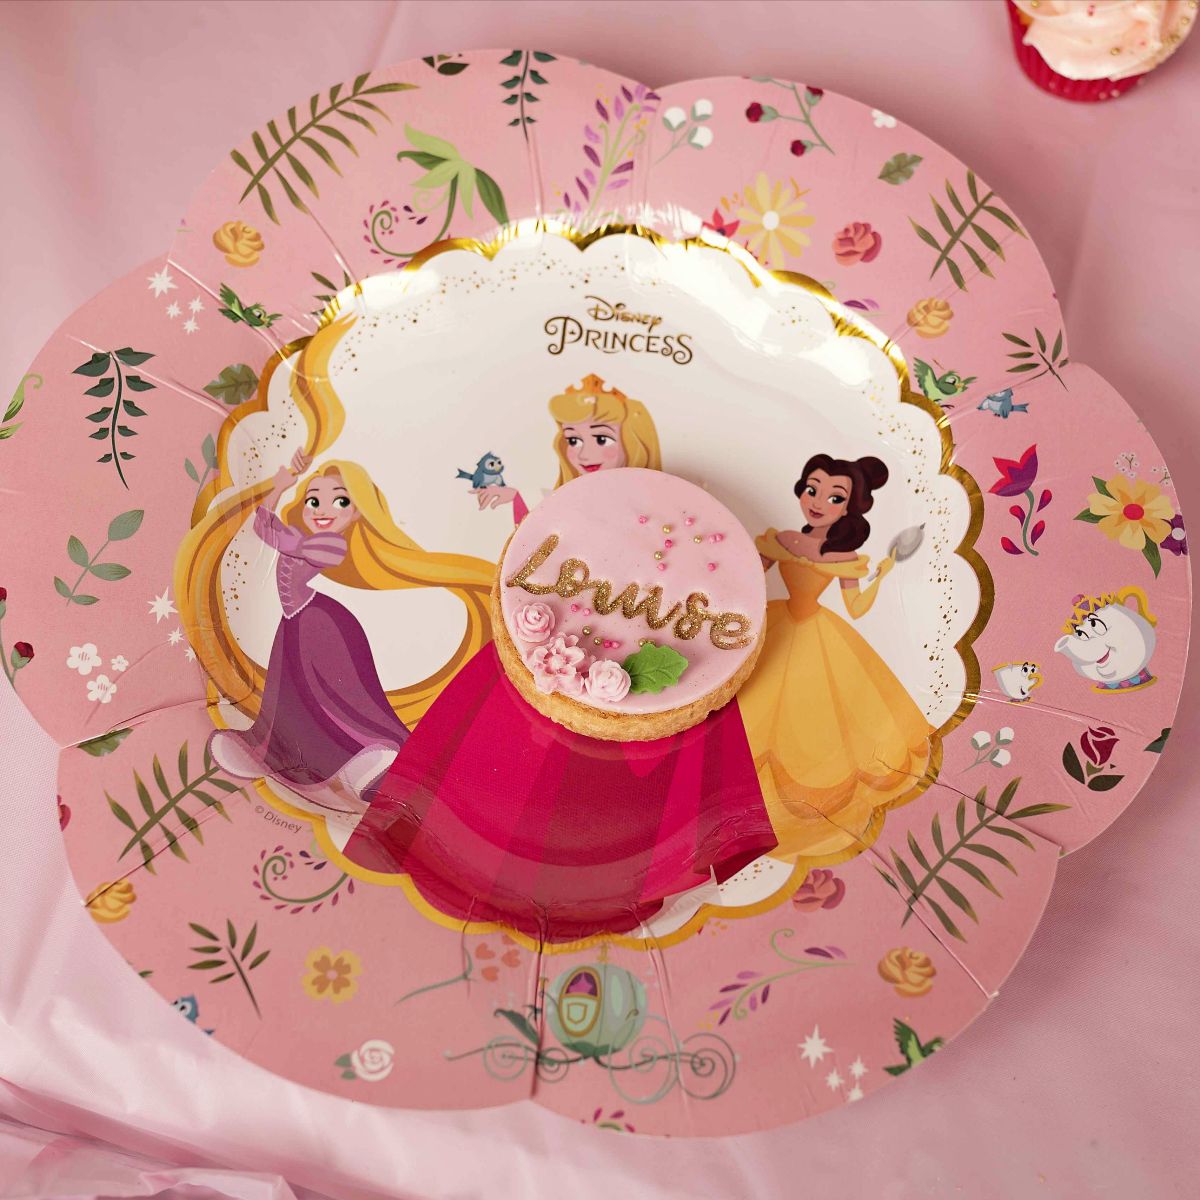 La décoration princesse pour un anniversaire - Blog Tendance